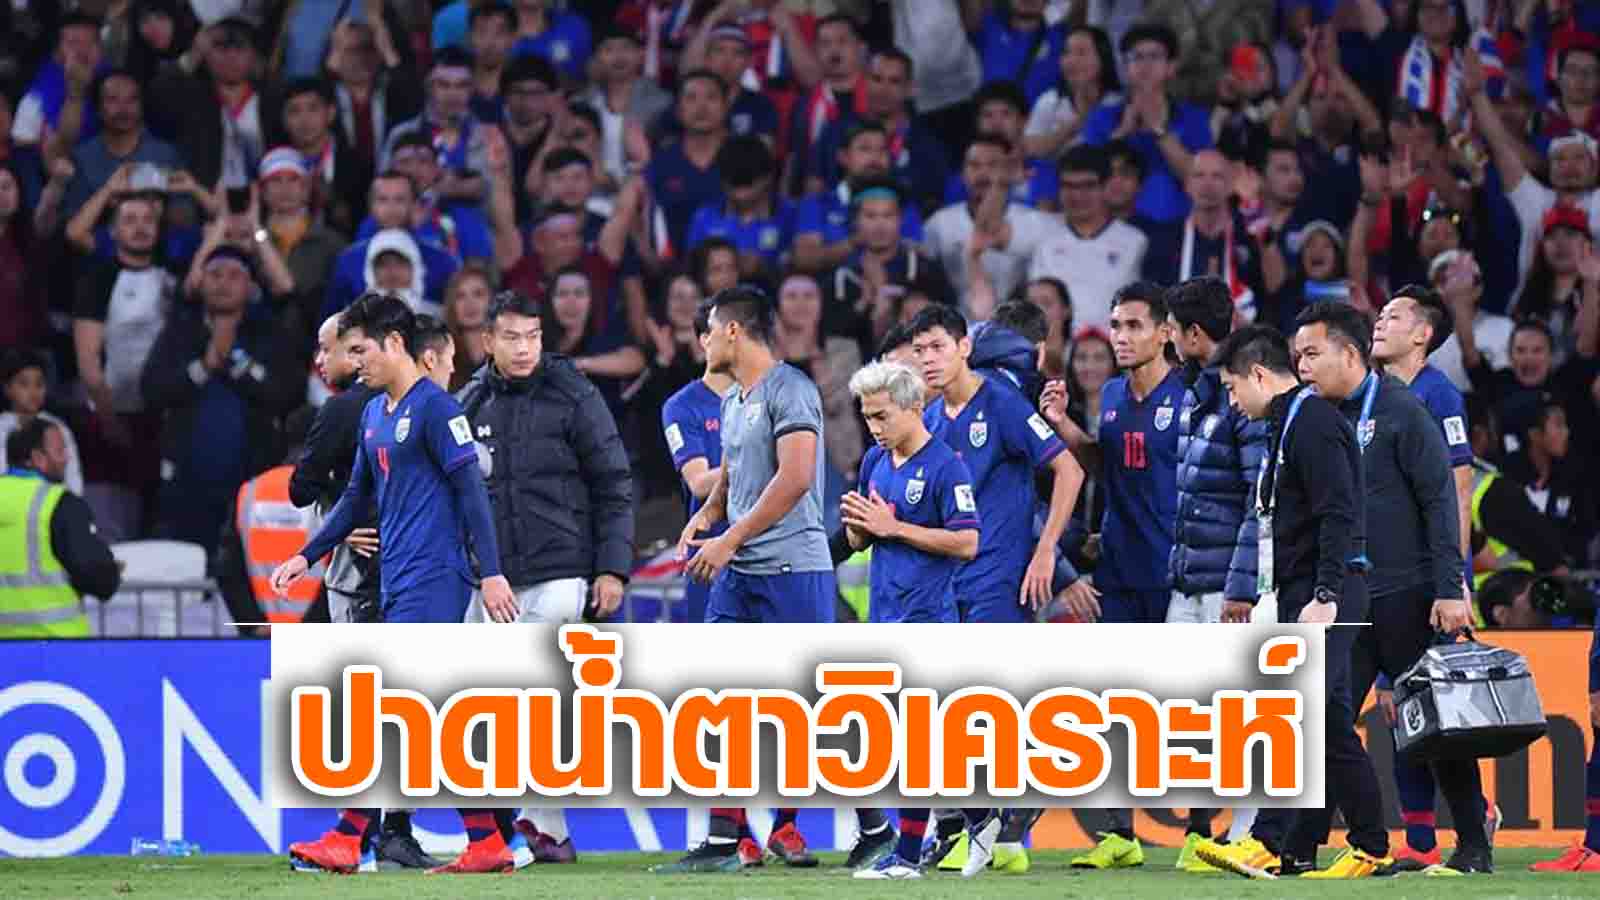 ทีมชาติไทย เอเชียนคัพ 2019